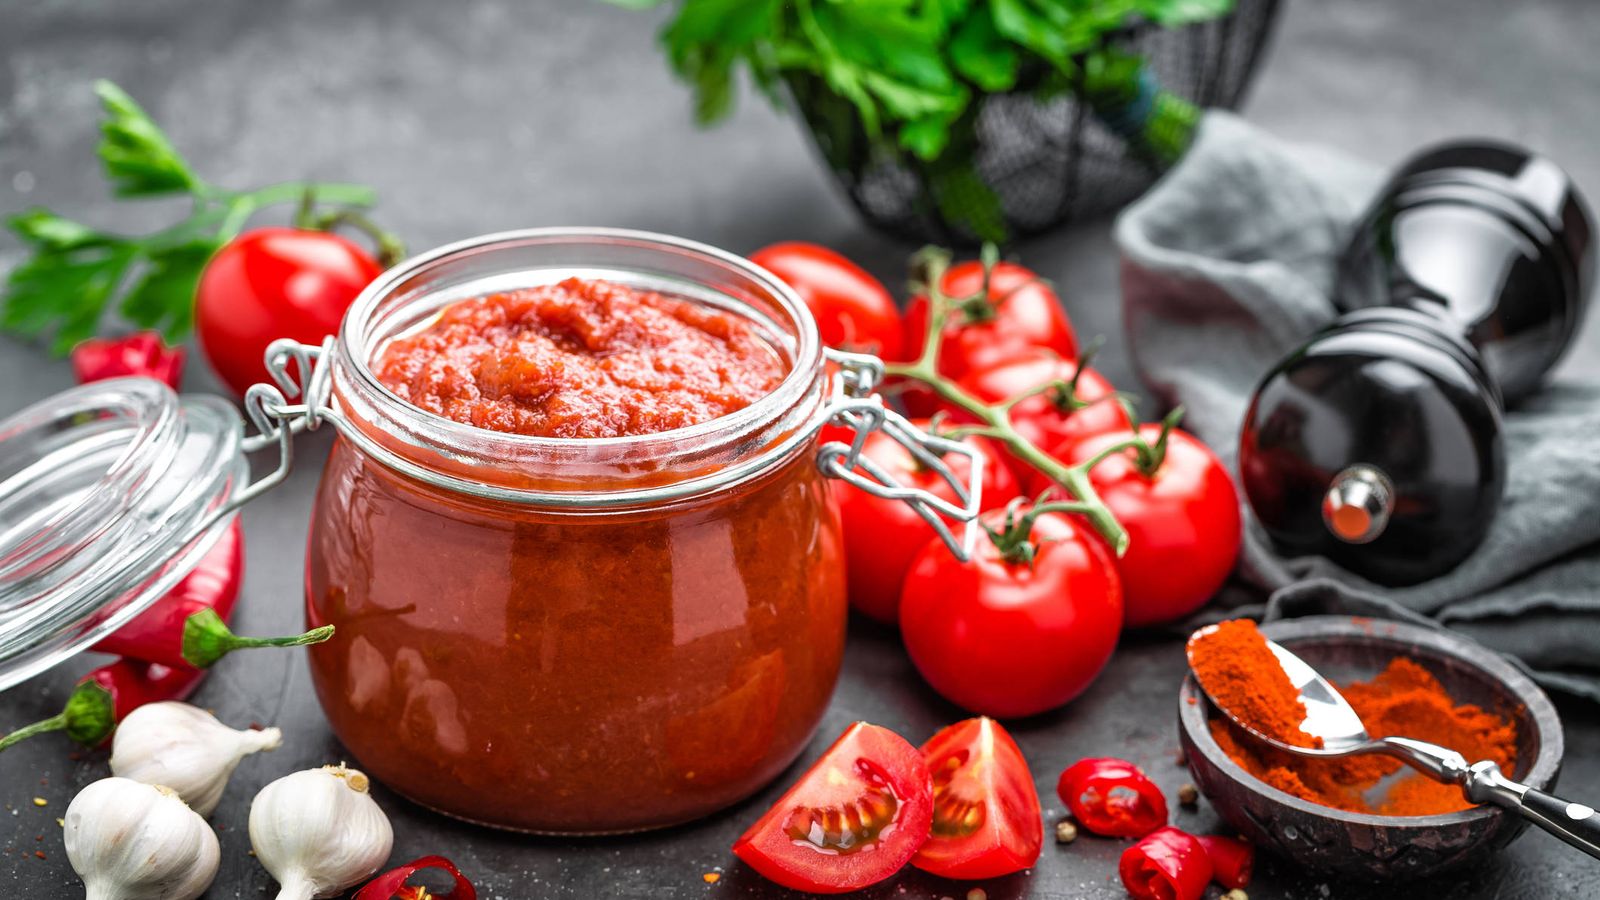 Prefiere las salsas a base de tomate en lugar de las cremosas